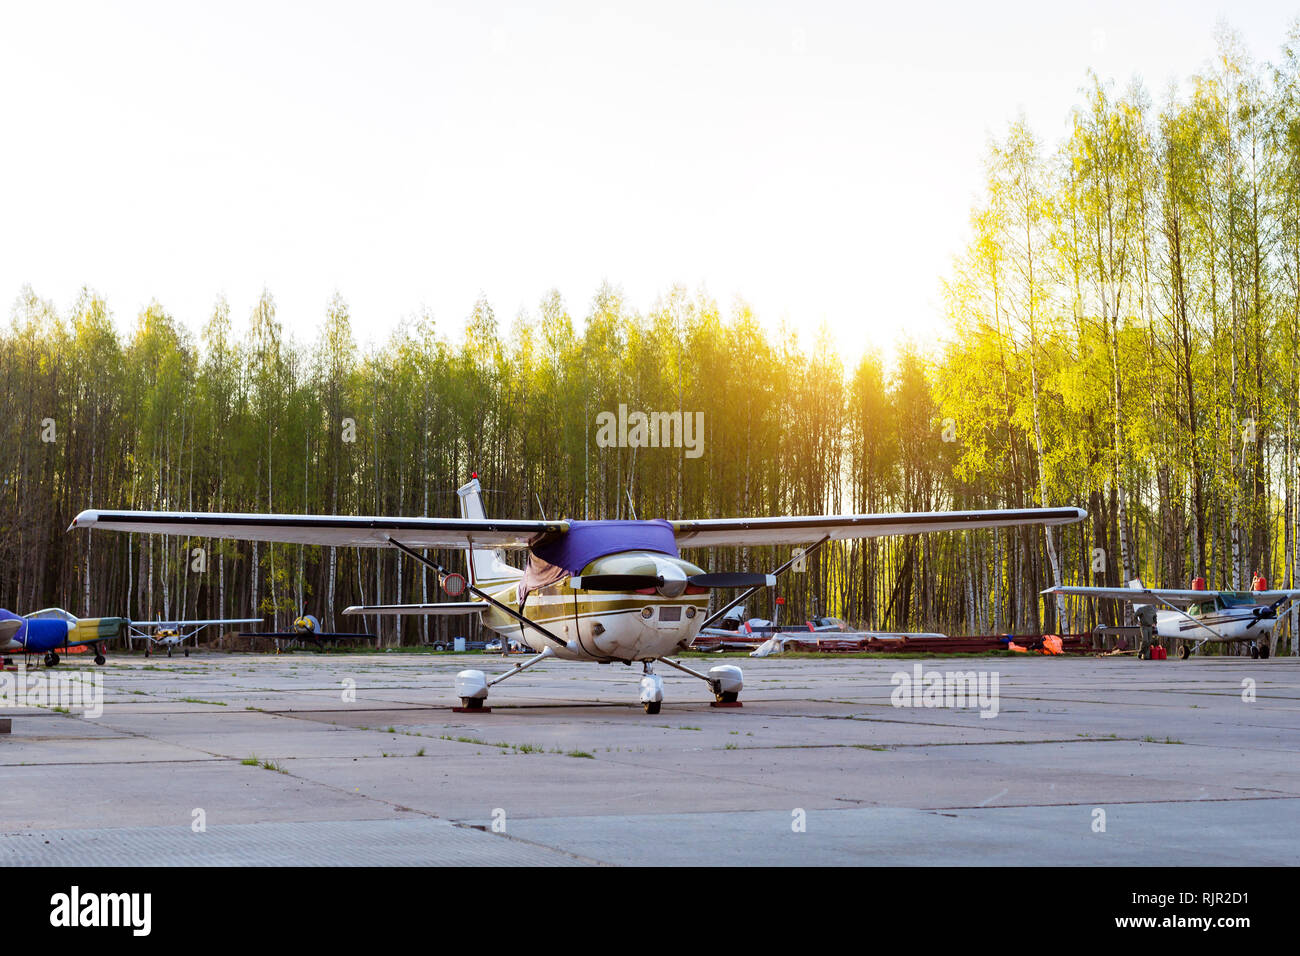 Licht Passagierflugzeuge vor der Abreise am Flughafen in Kronshtadt, St. Petersburg Russland geparkt. Industrie- und Civil Air Transport im Flugzeug. Professionelle Flüge in Flugzeugen Stockfoto